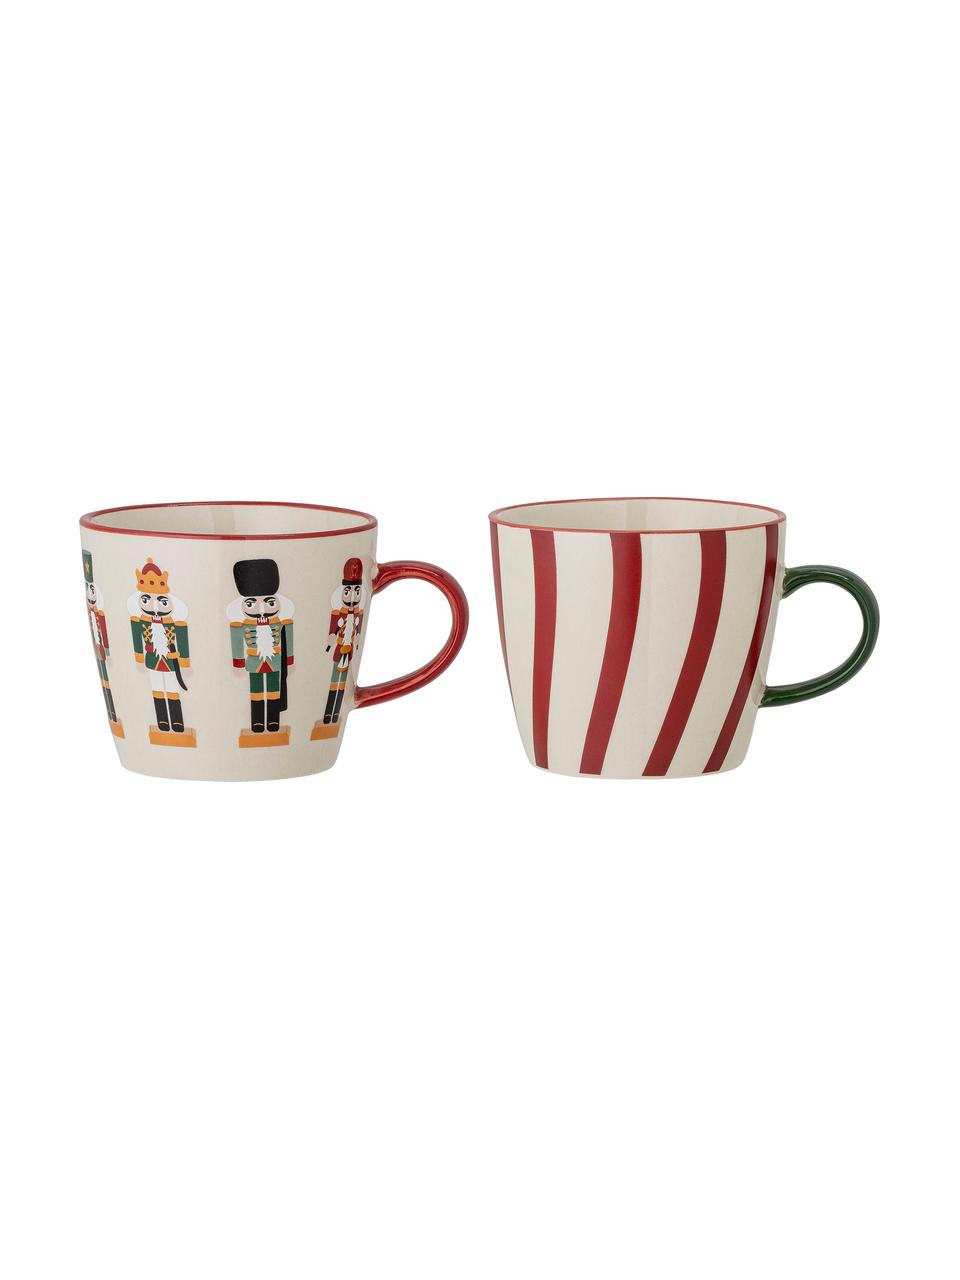 Tassen Jolly mit Nussknacker-Motiven, 2 Stück, Steingut, Rot, Weiß, Ø 9 x H 8 cm